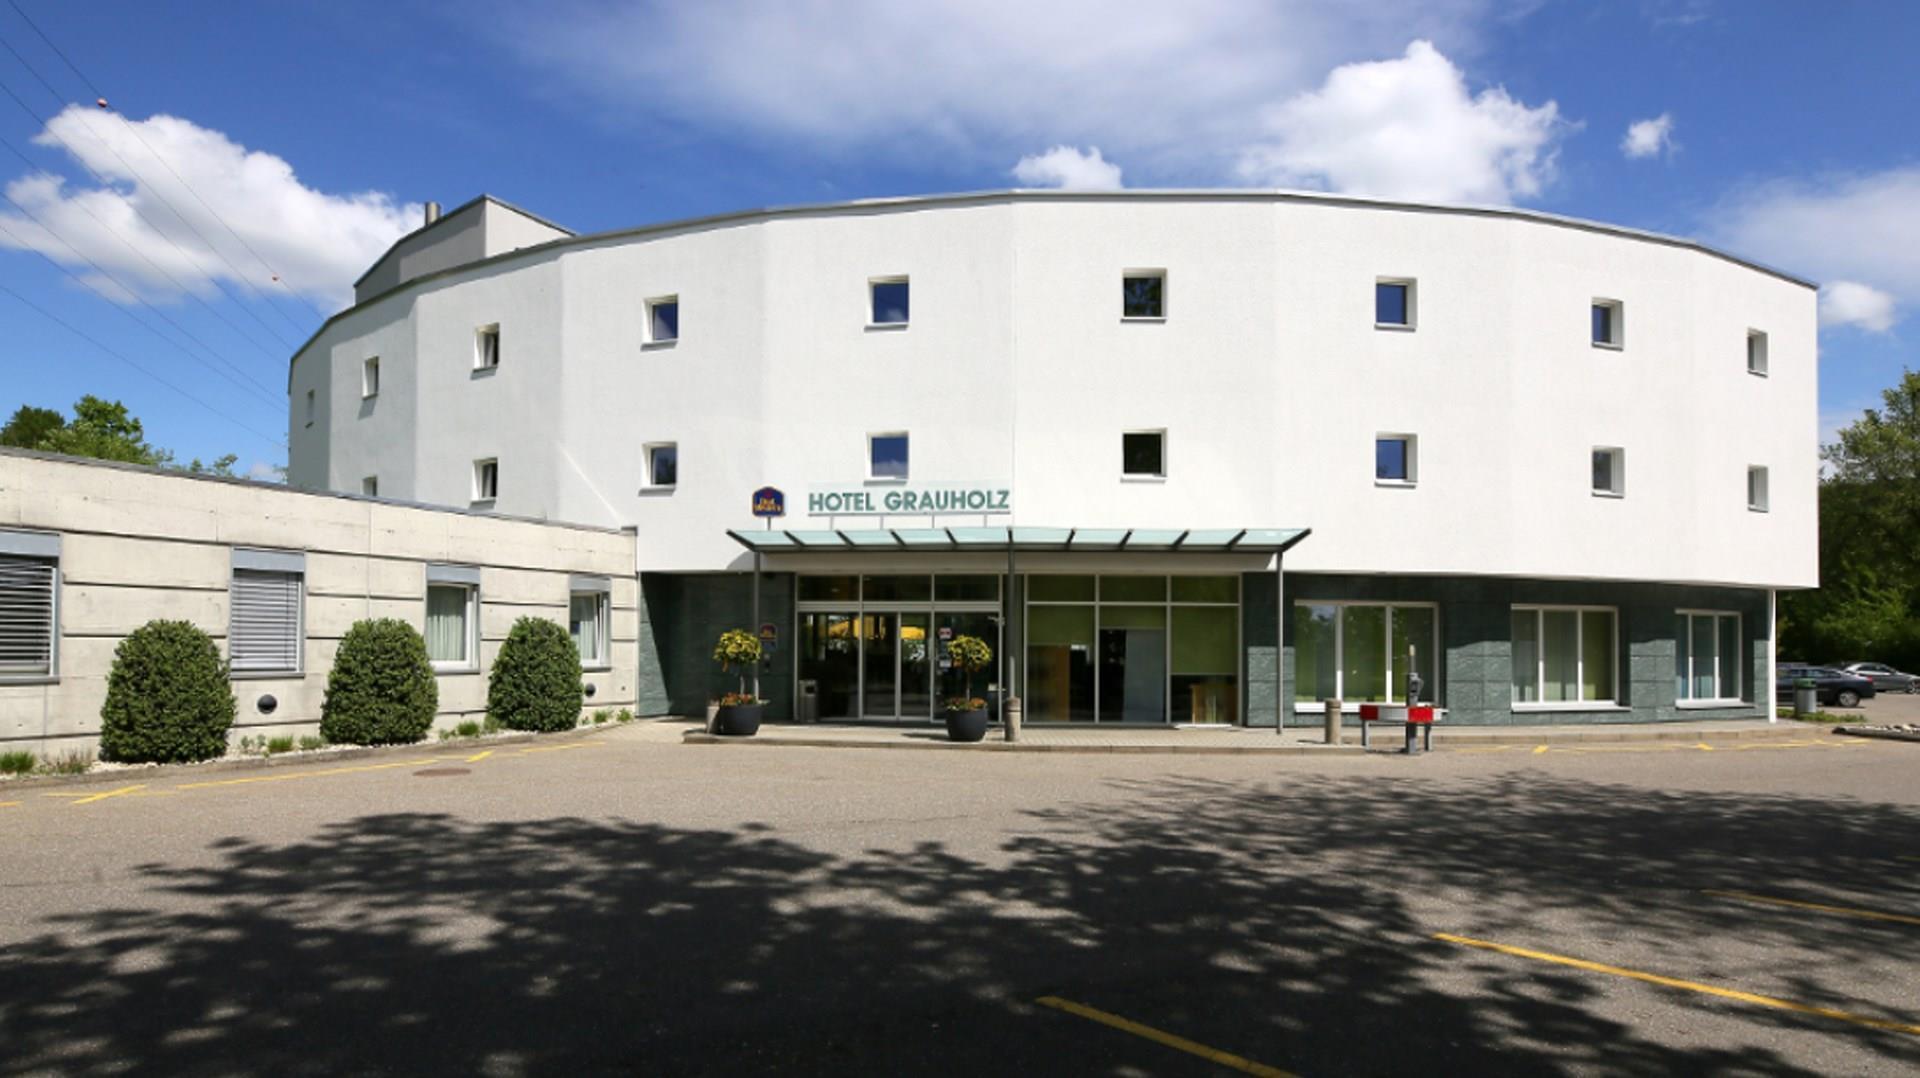 Hotel Grauholz in Ittigen, CH